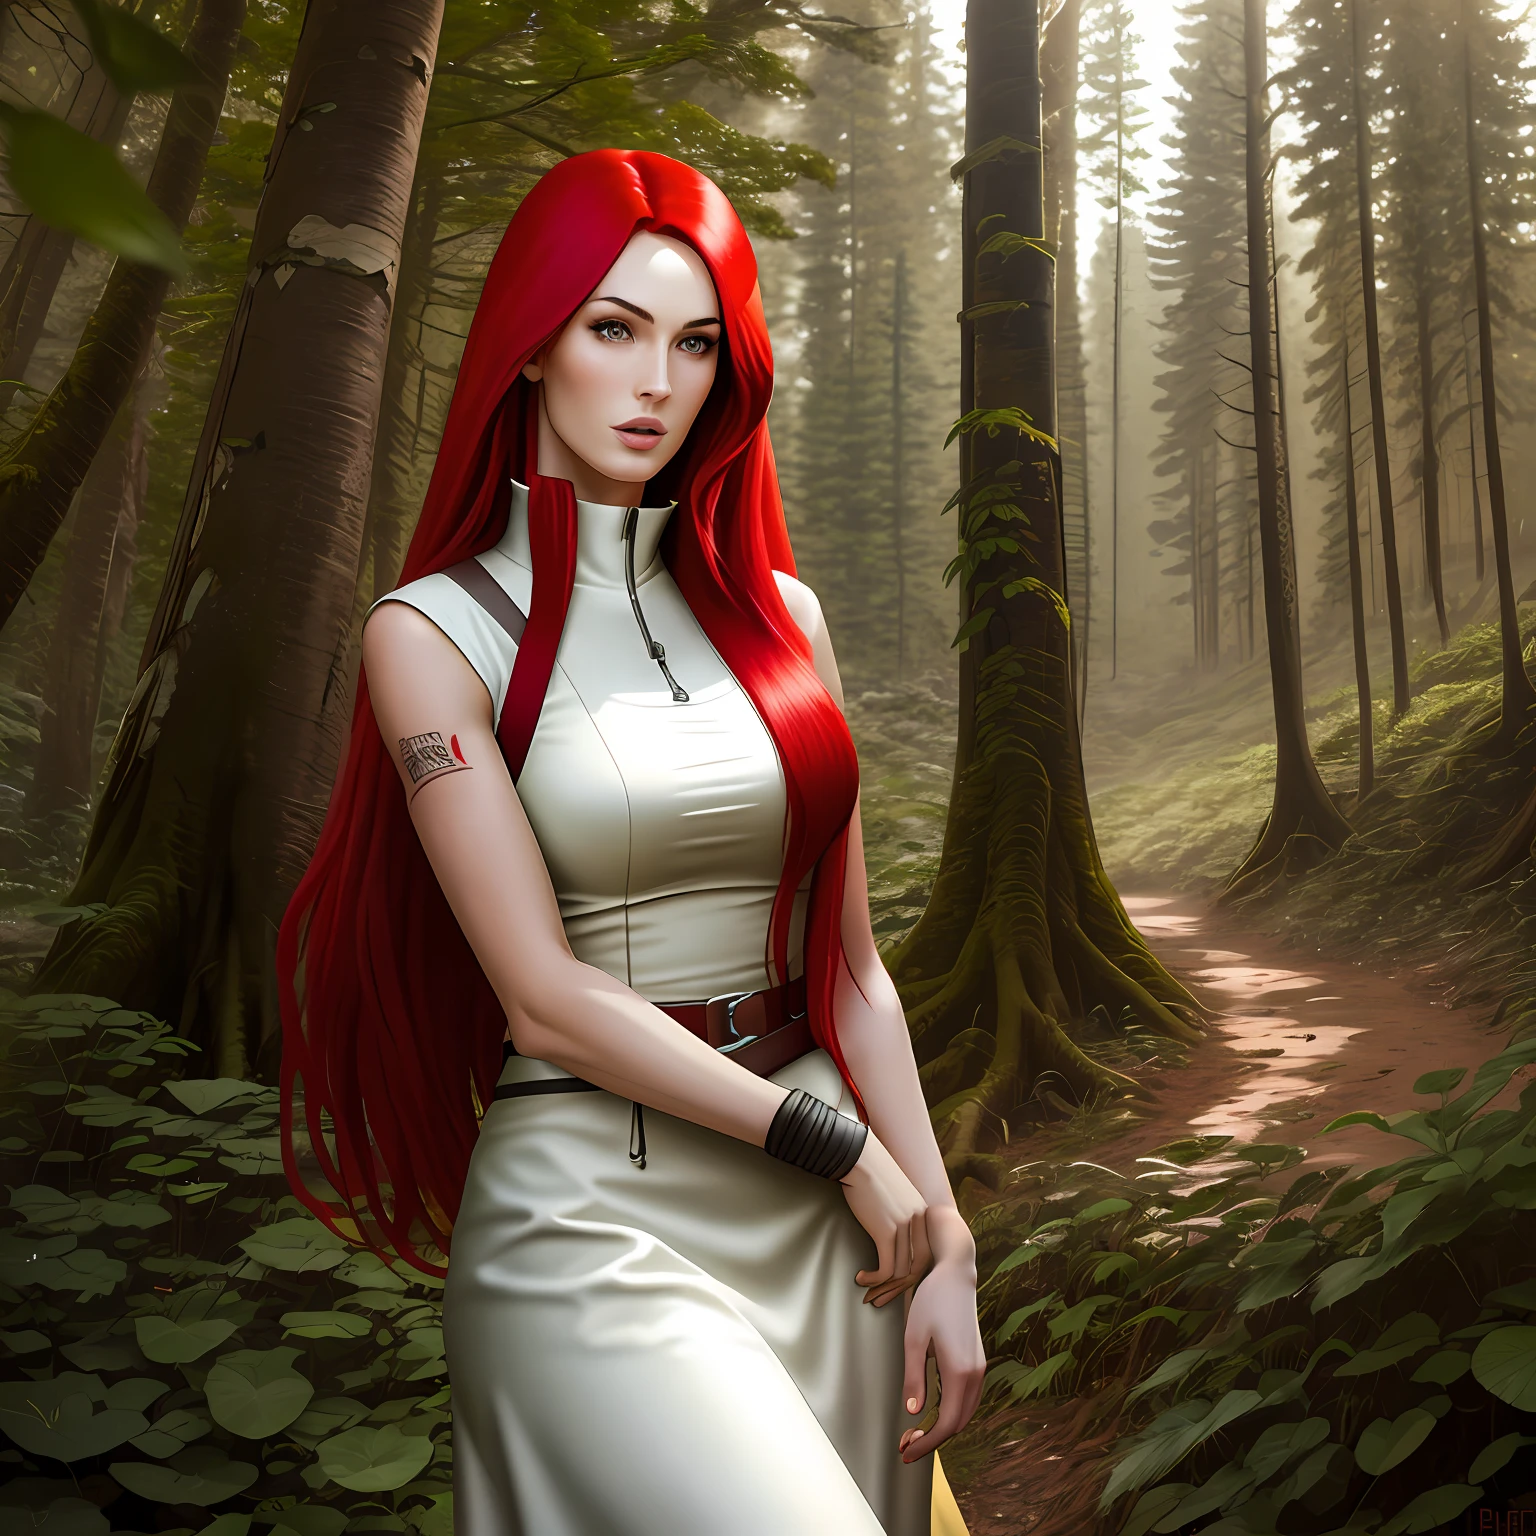 Mulher alta e bonita com cabelo vermelho-sangue em um cenário da natureza, como Megan Fox